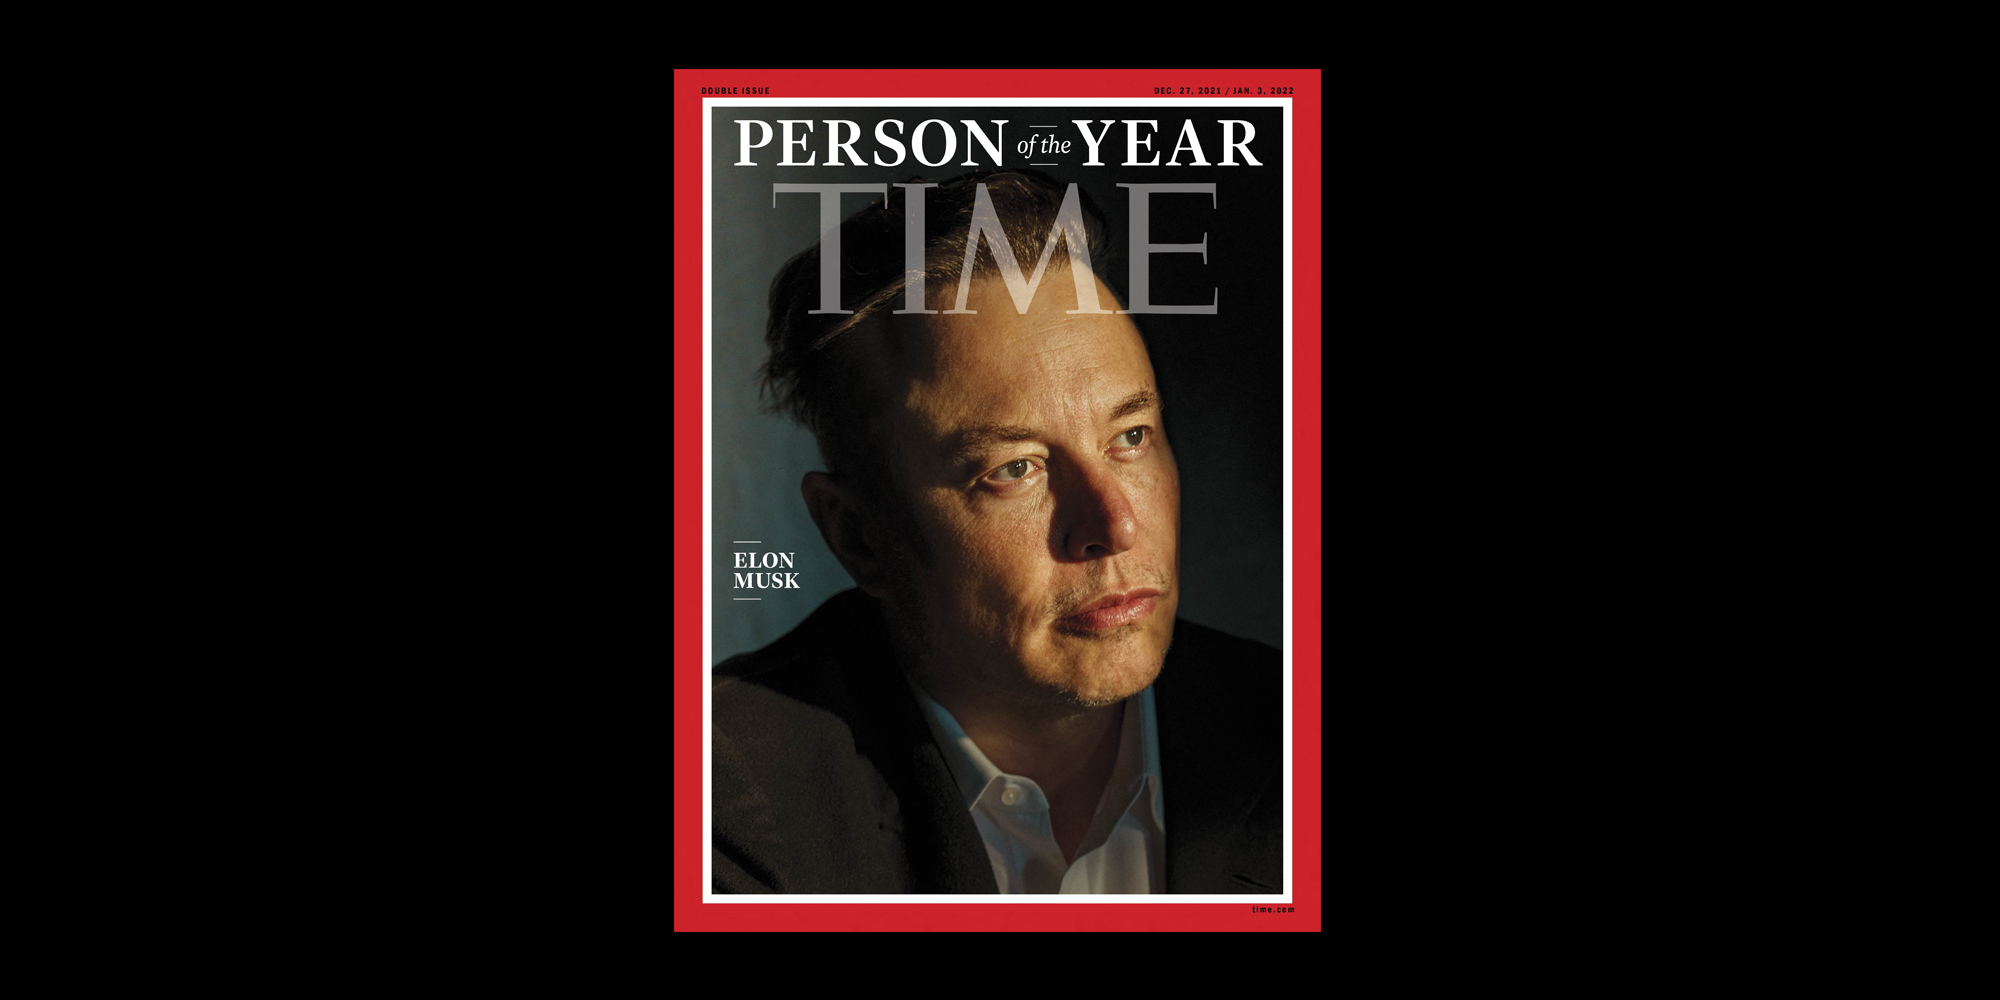 , O Elon Musk είναι το πρόσωπο της χρονιάς για το Time